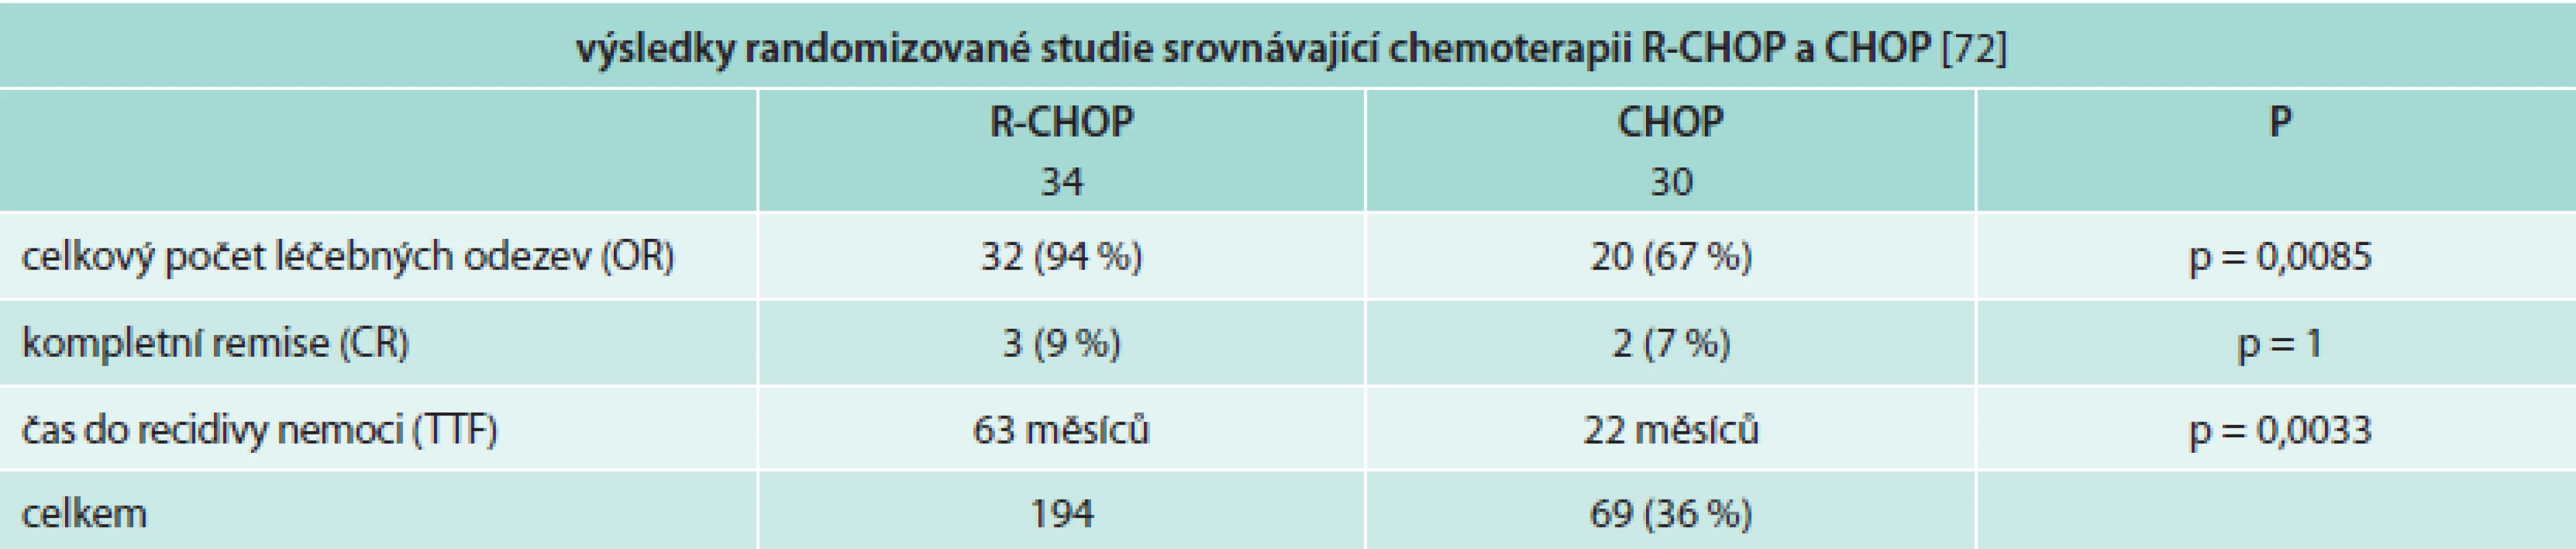 Srovnání výsledků léčby pomocí chemoterapie bez a s rituximabem prokazují, že přidání rituximabu ke klasické chemoterapii je pro pacienty s Waldenströmovou makroglobulinemií přínosem